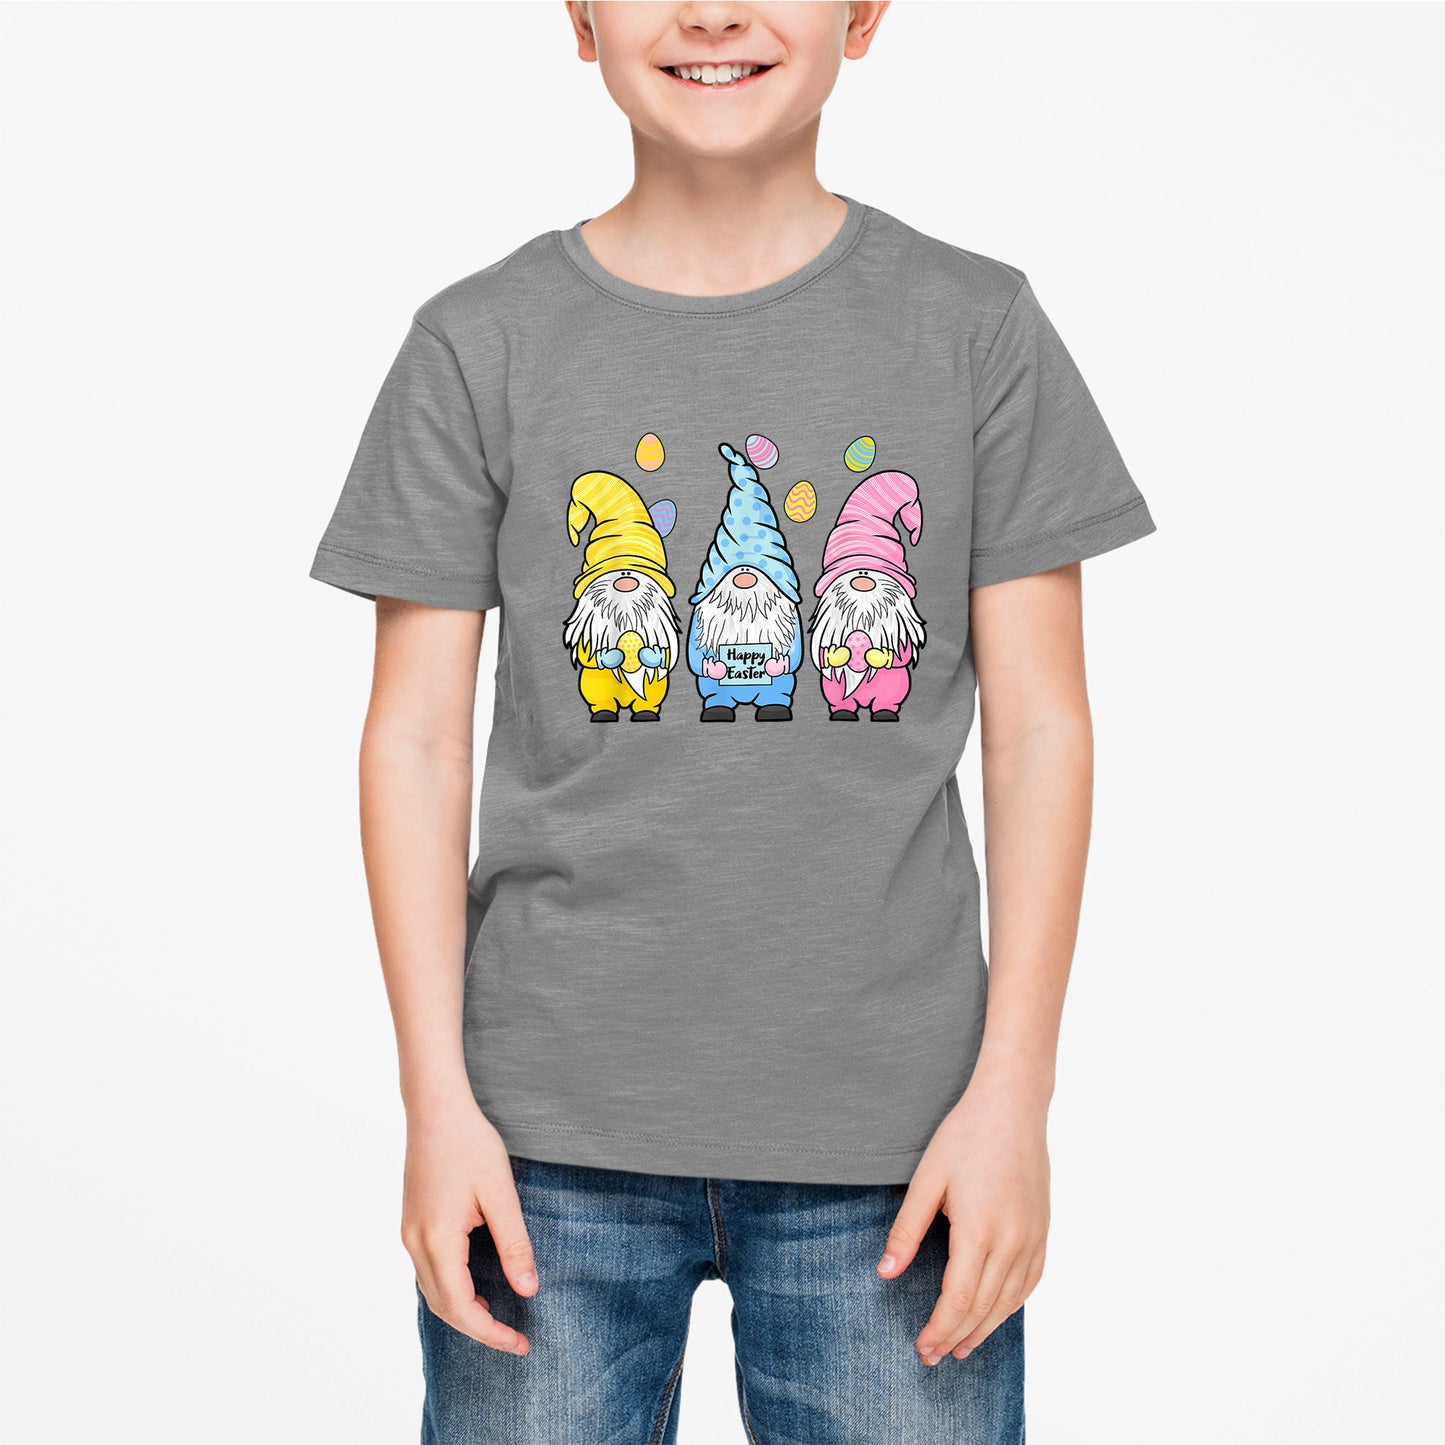 Gnome Easter Shirt, Toddler Boy Girl Easter Shirt, Easter Gifts For Kids, Easter Gifts For Toddlers